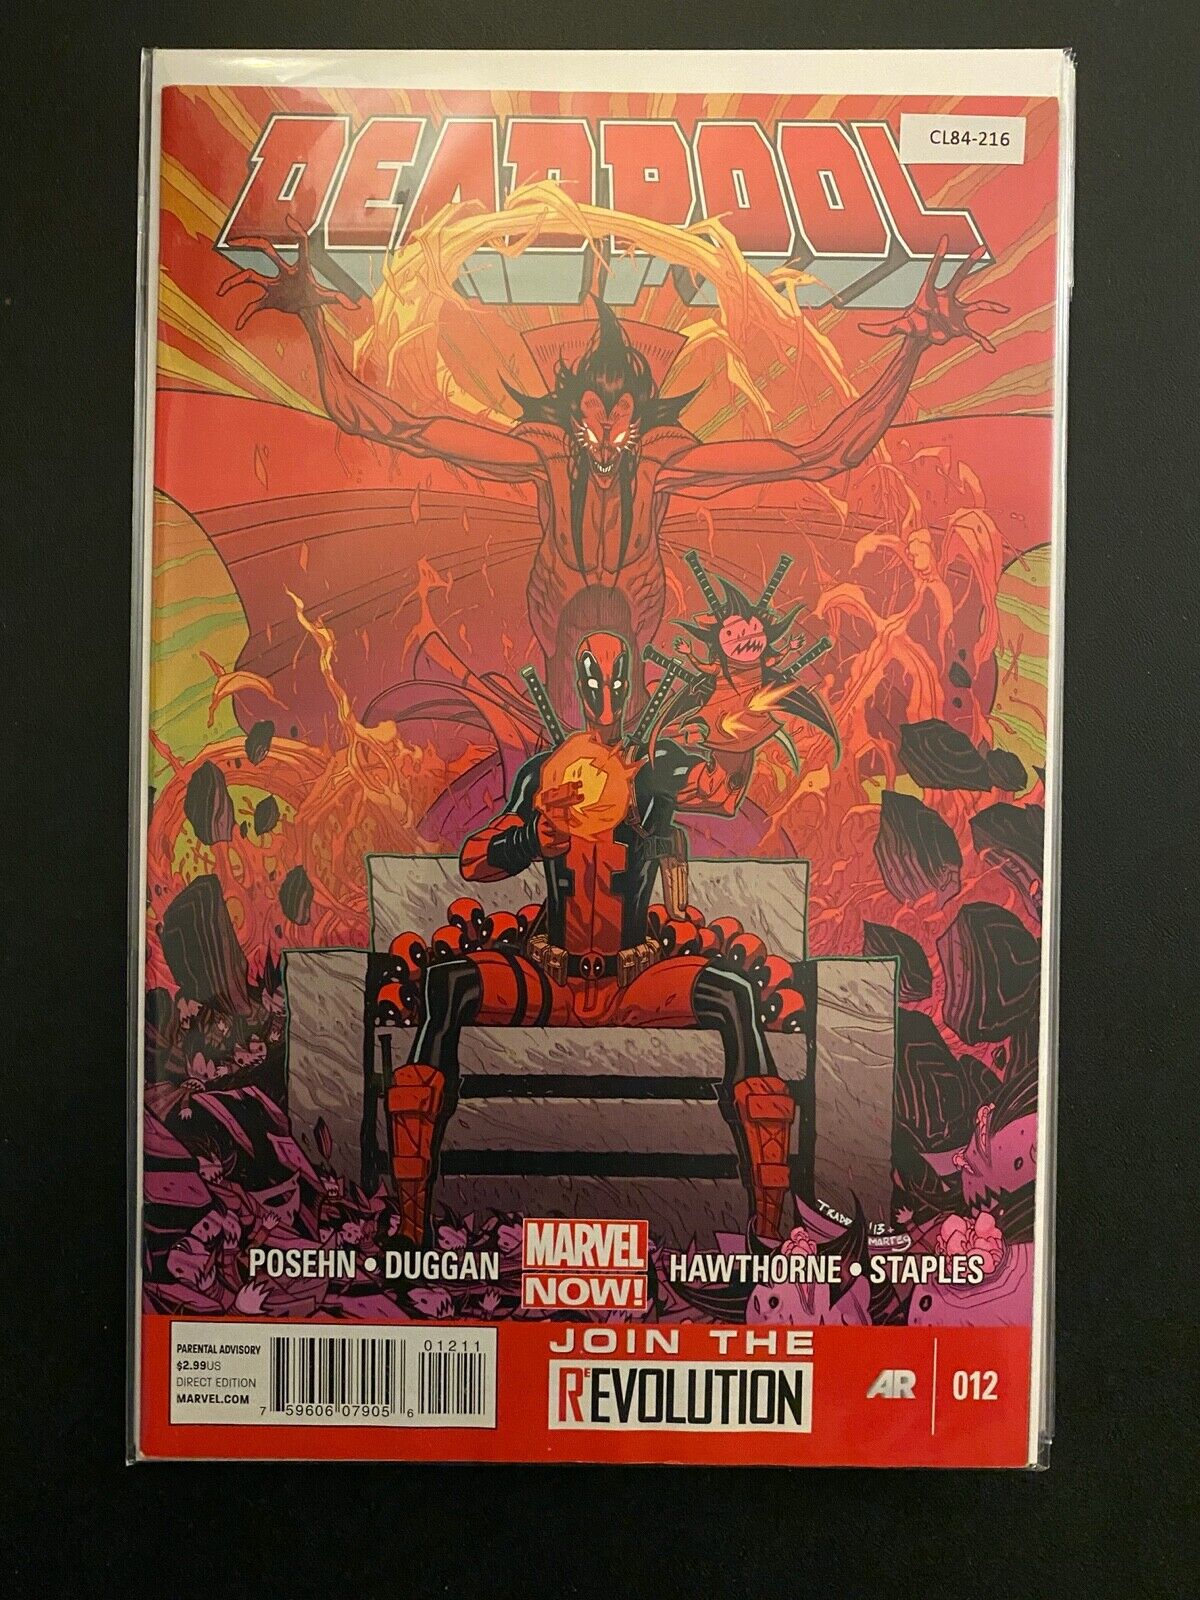 Deadpool vol.3 #12 2013 High Grade 9.0 Marvel Comic Book CL84-216